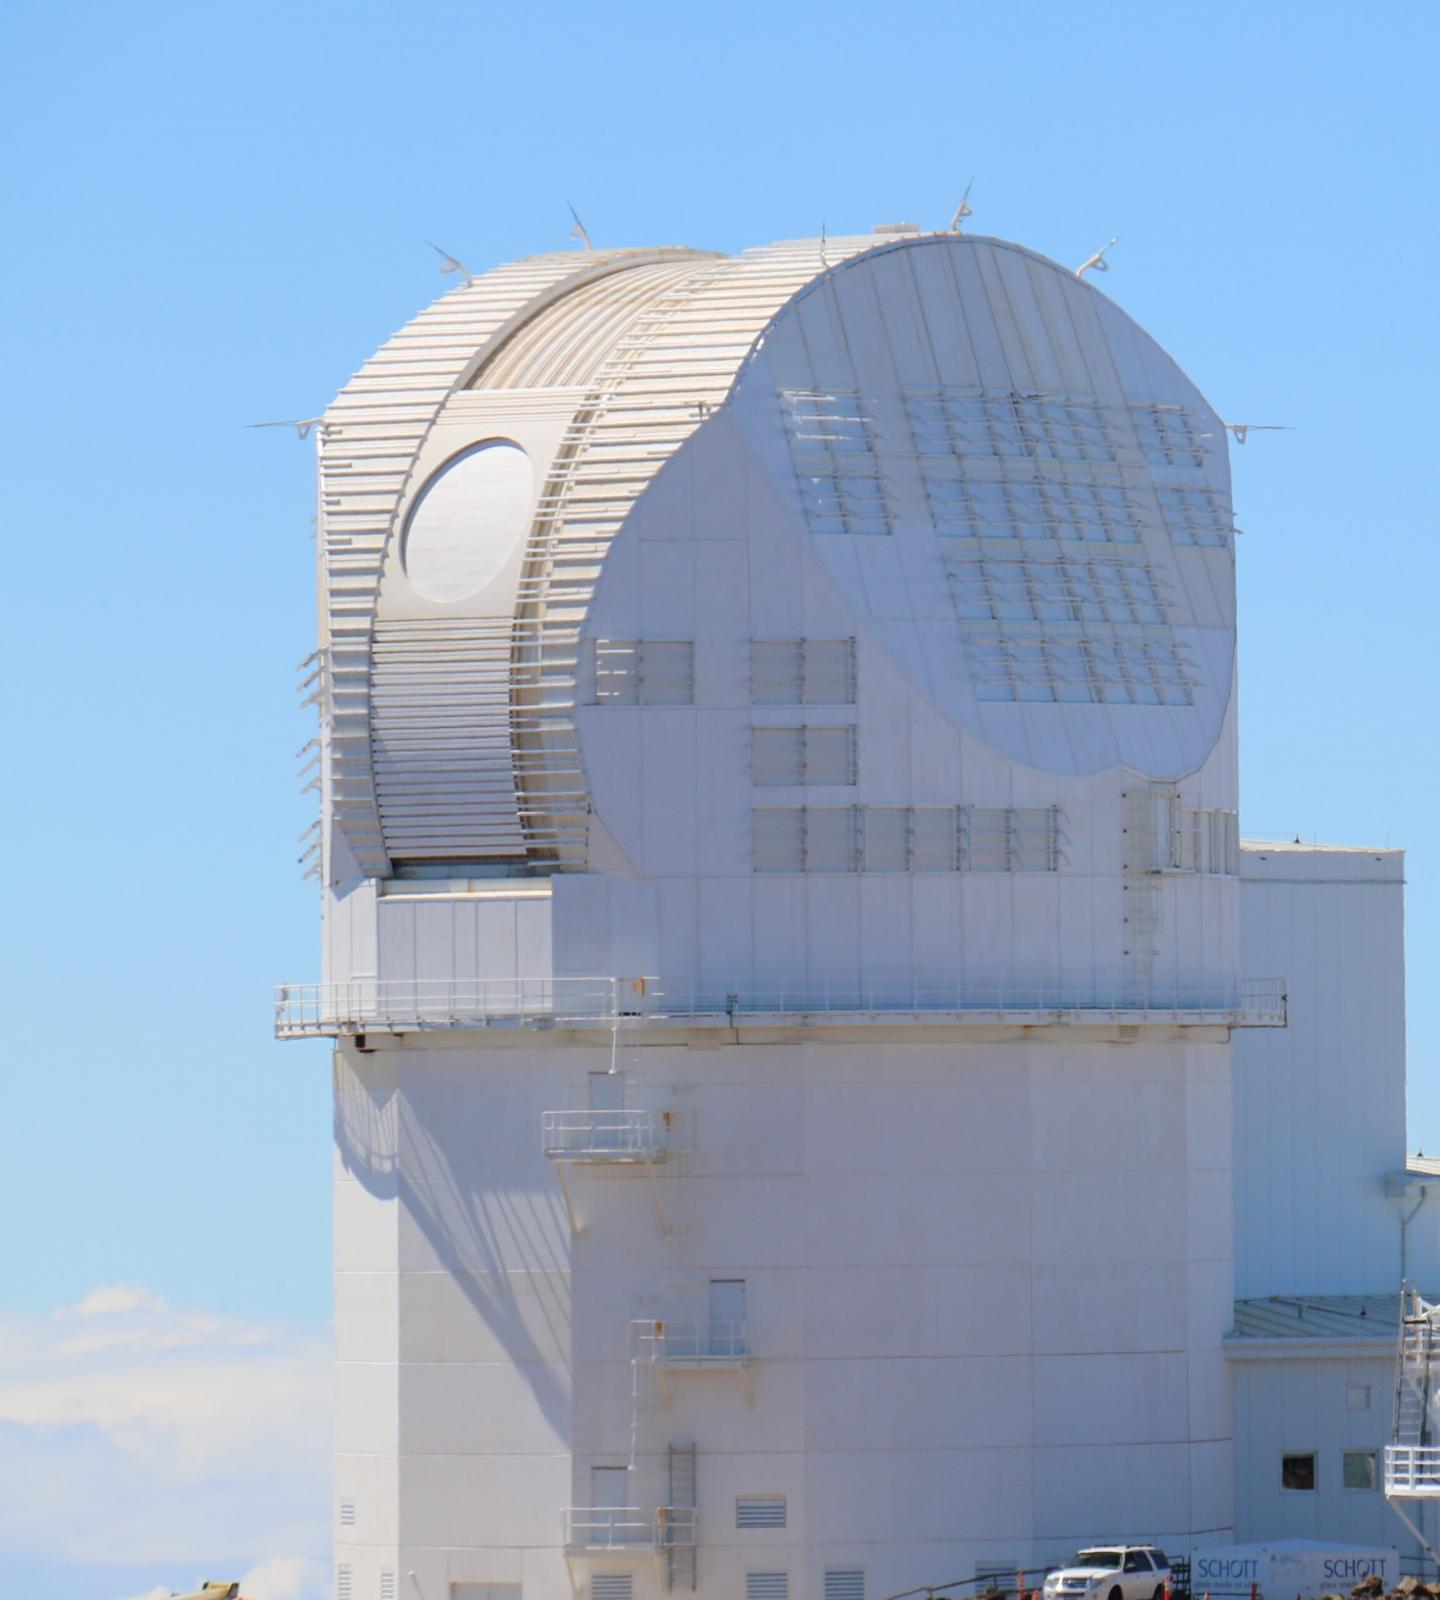 Inouye Solar Telescope